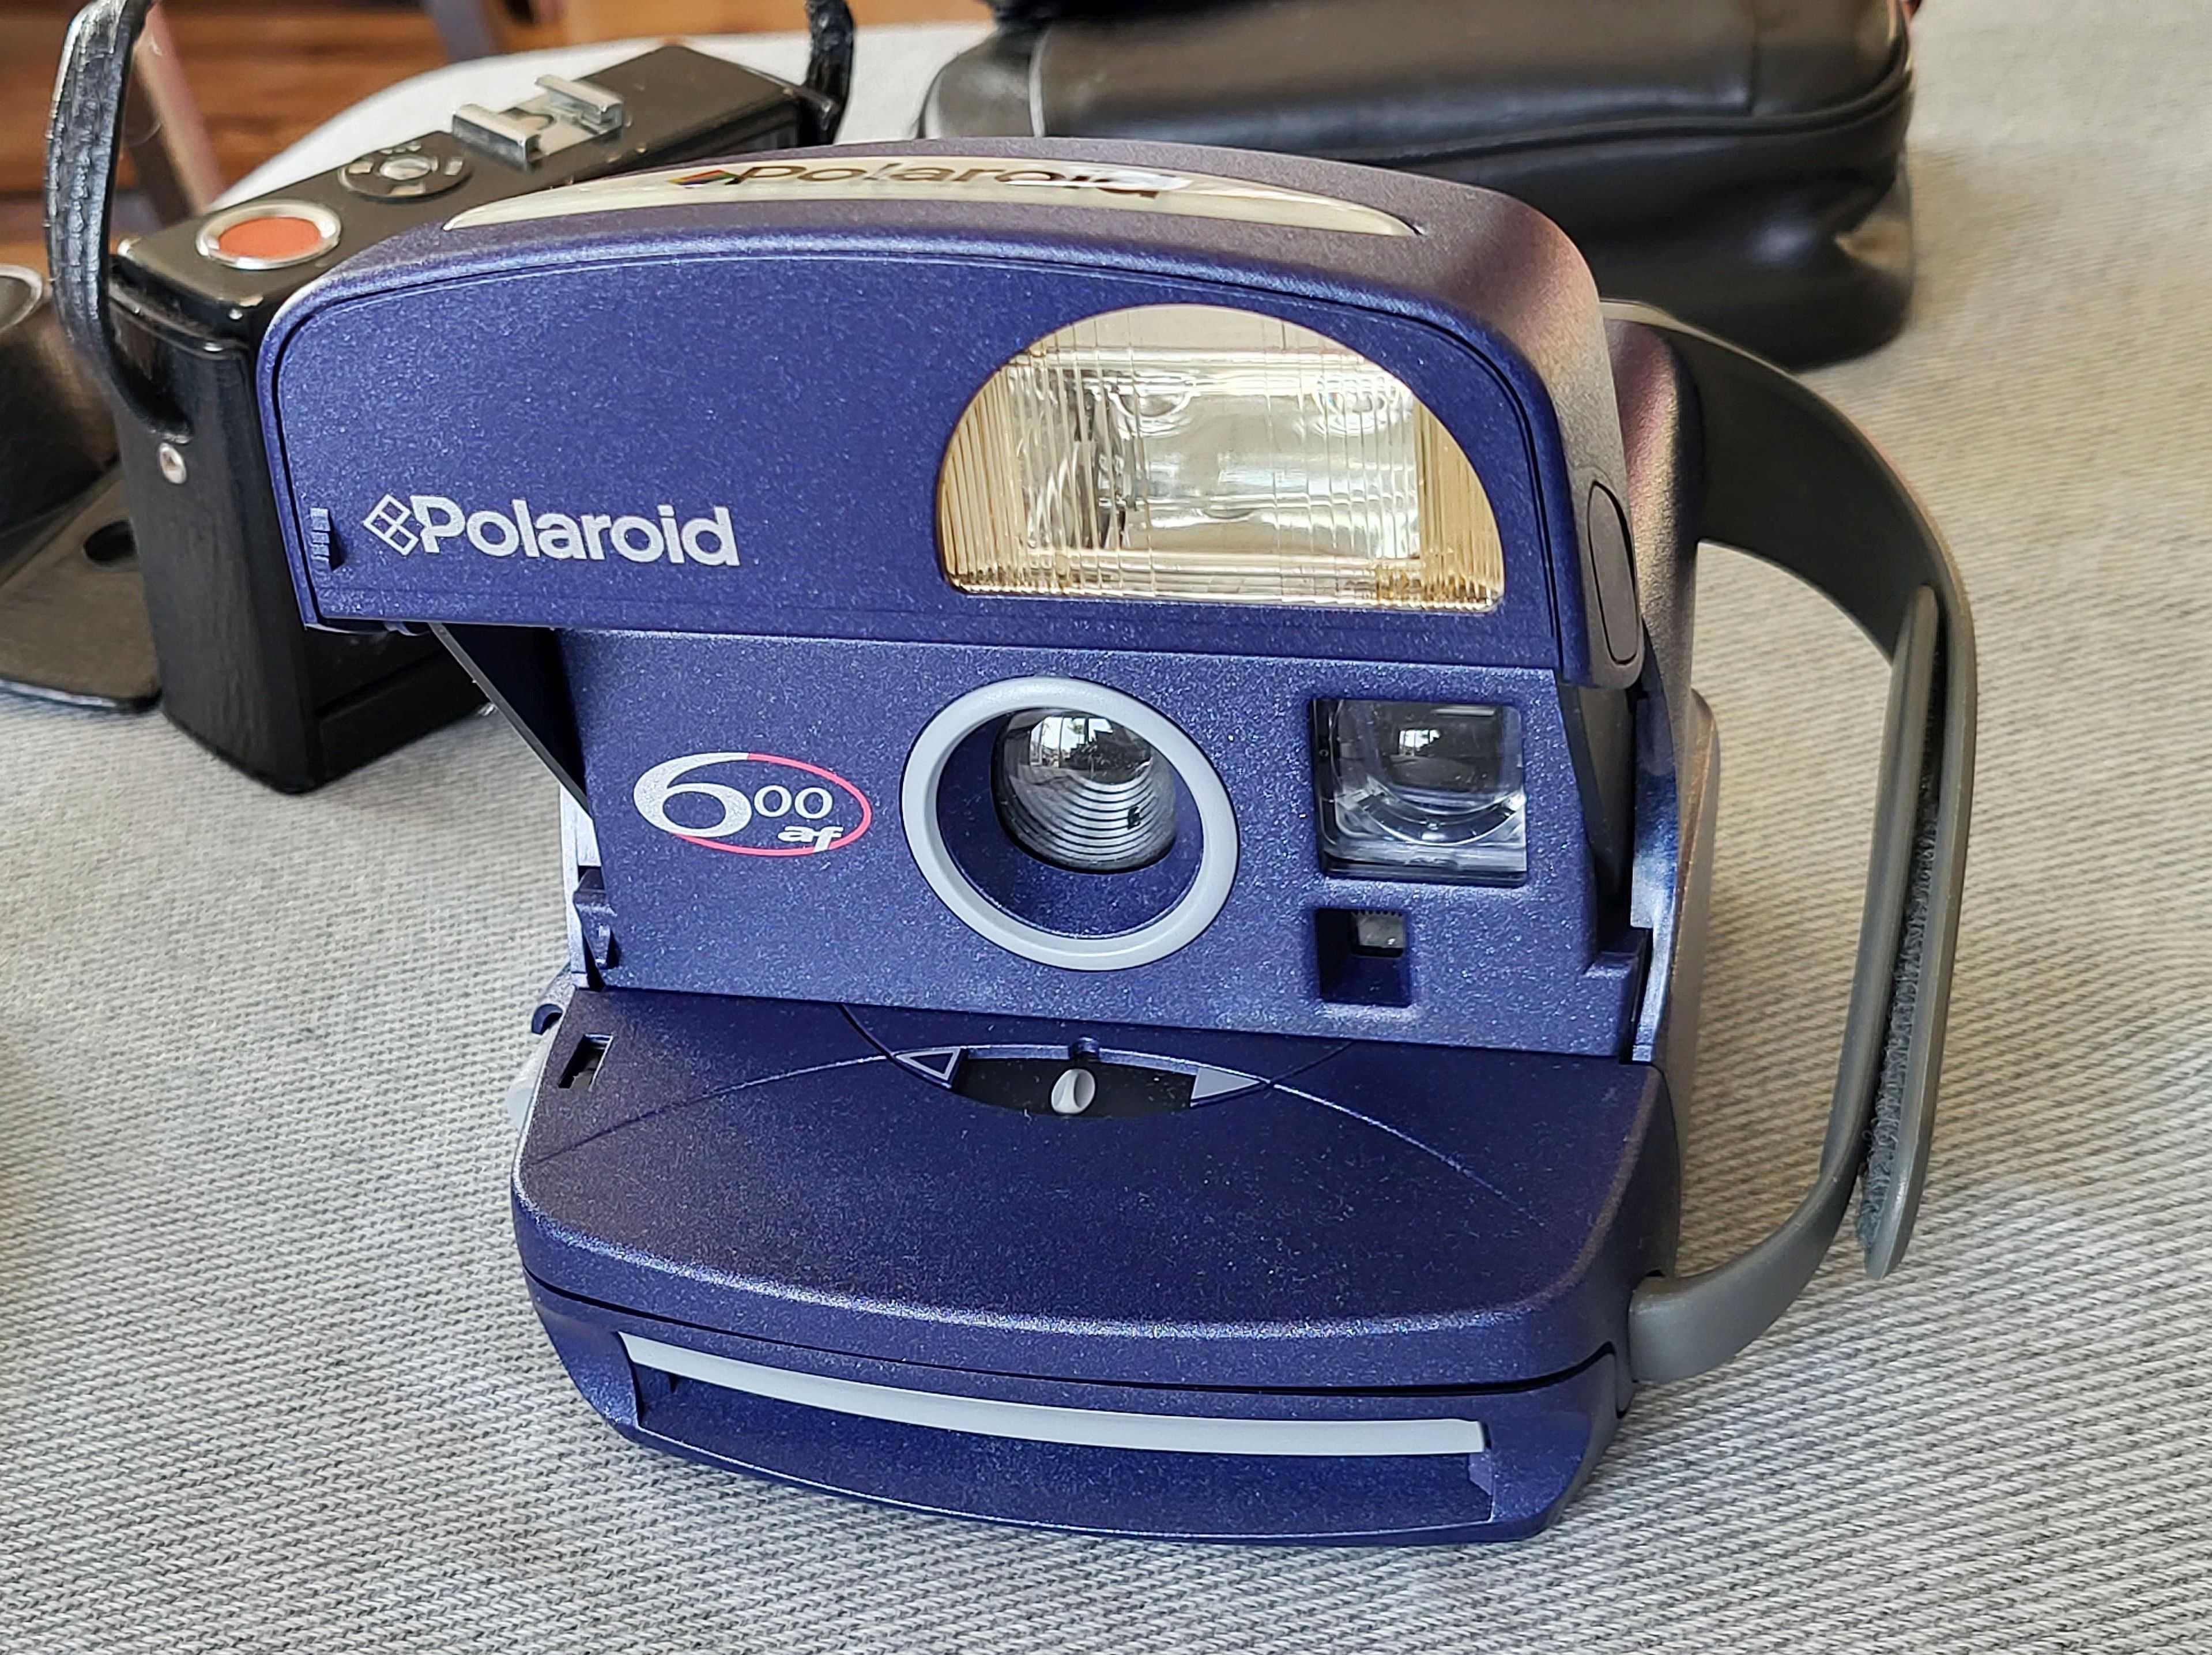 Aparat foto Polaroid 600af auto focus do zdjęć natychmiastowych